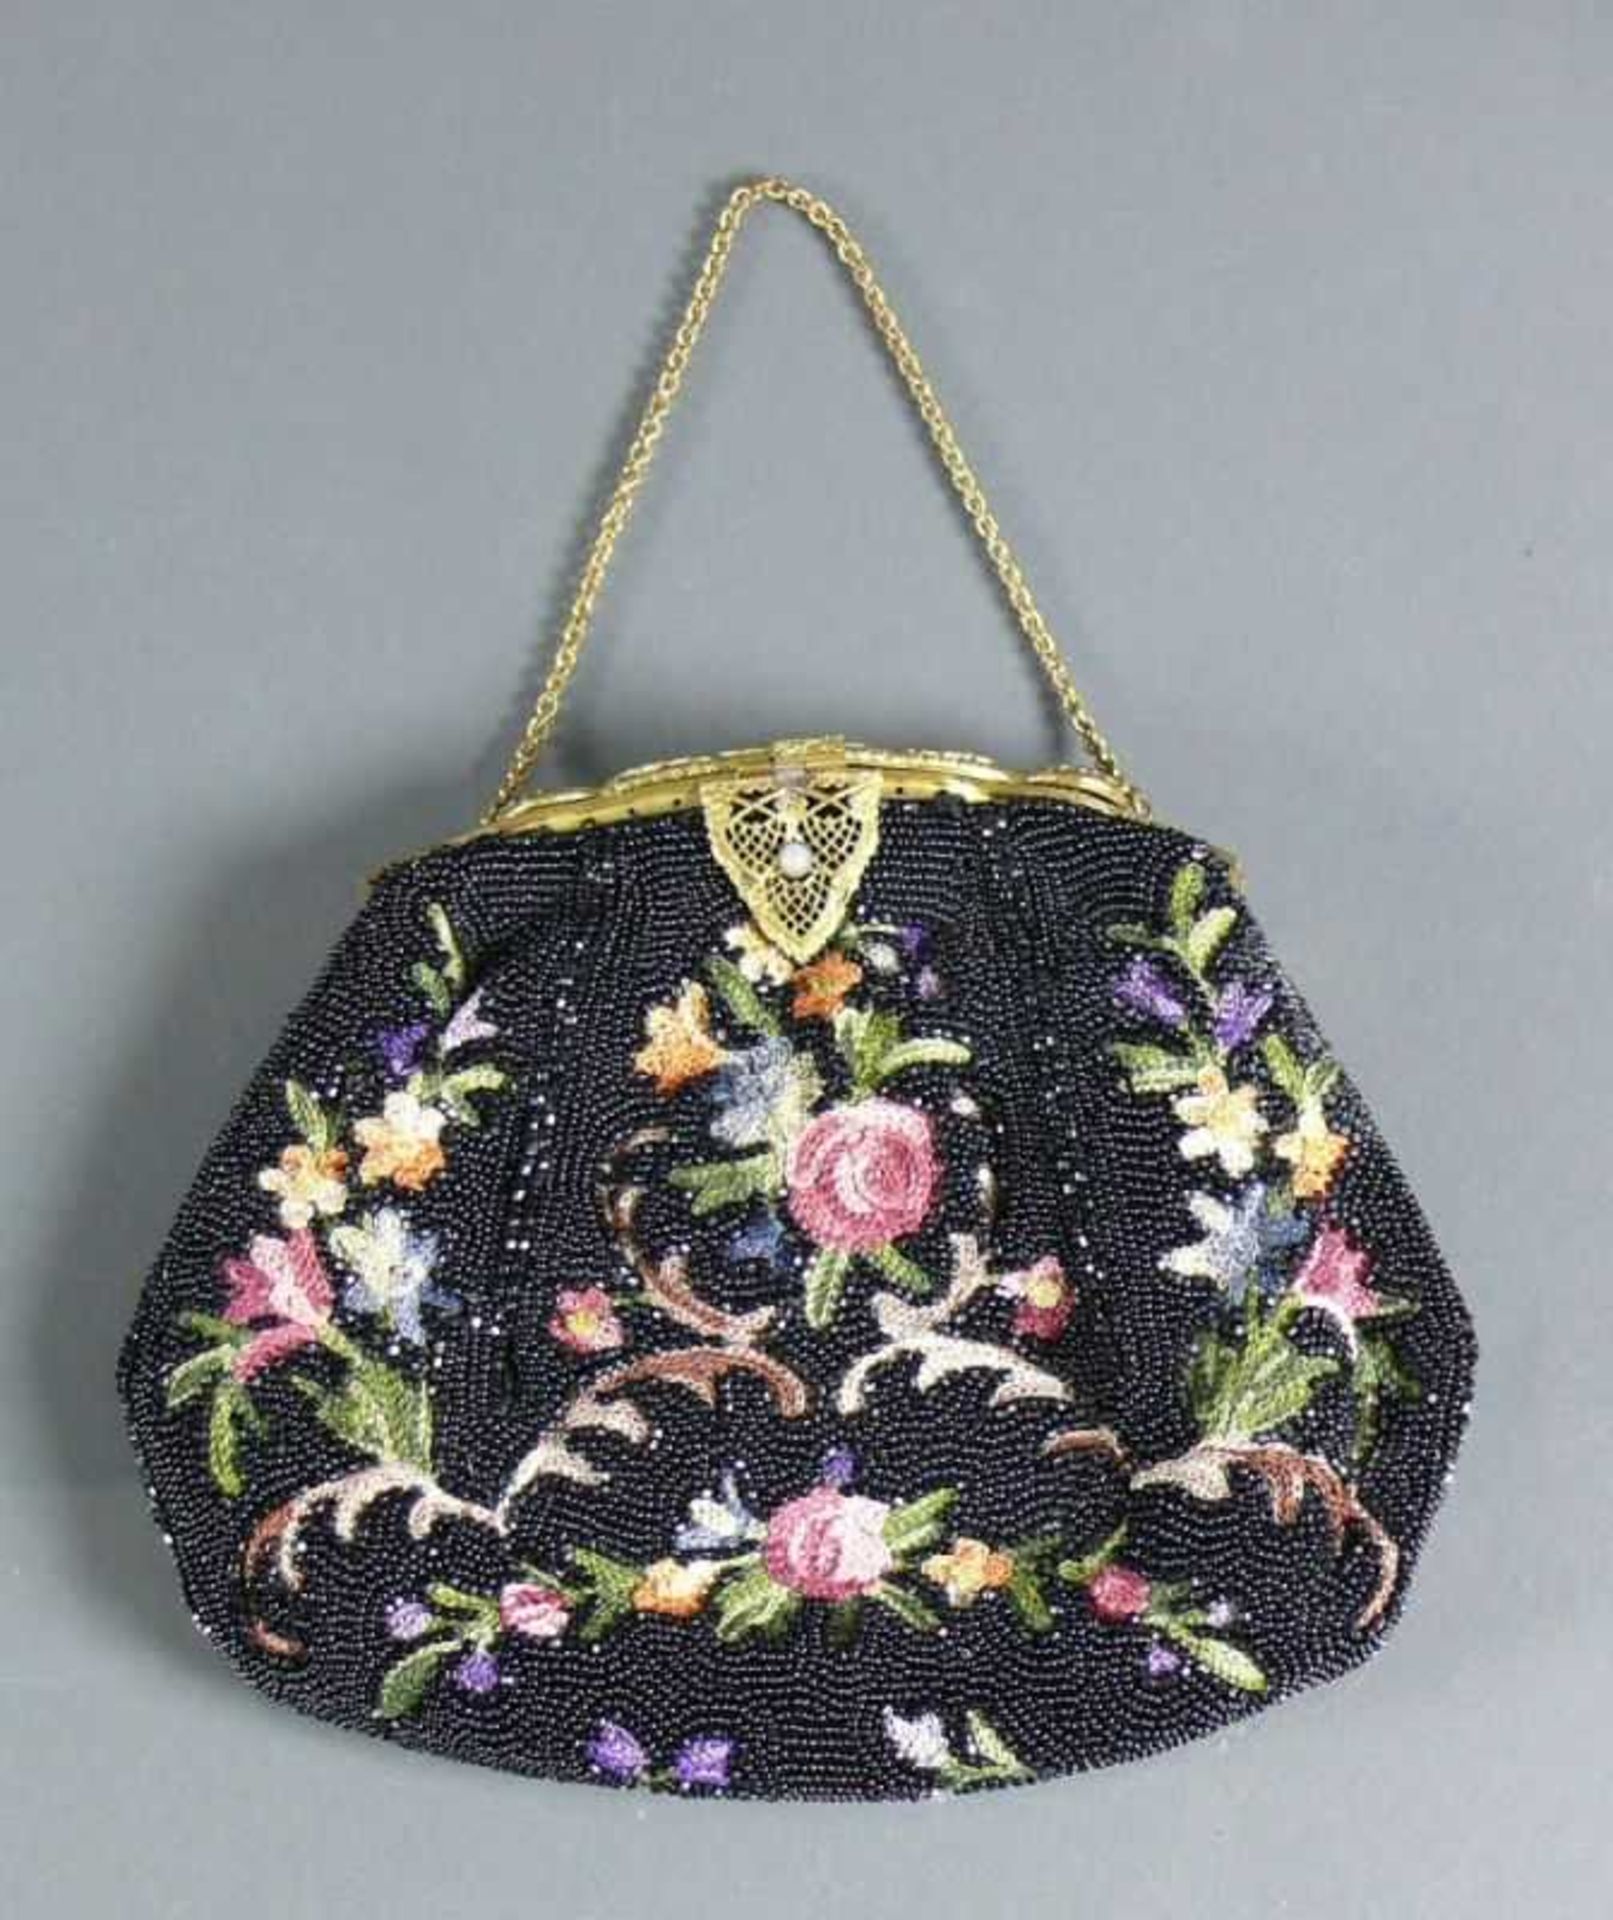 Abendtasche (1910-20) Perlstickerei in schwarz und gestickte farbige Blüten; Messingbügel floral